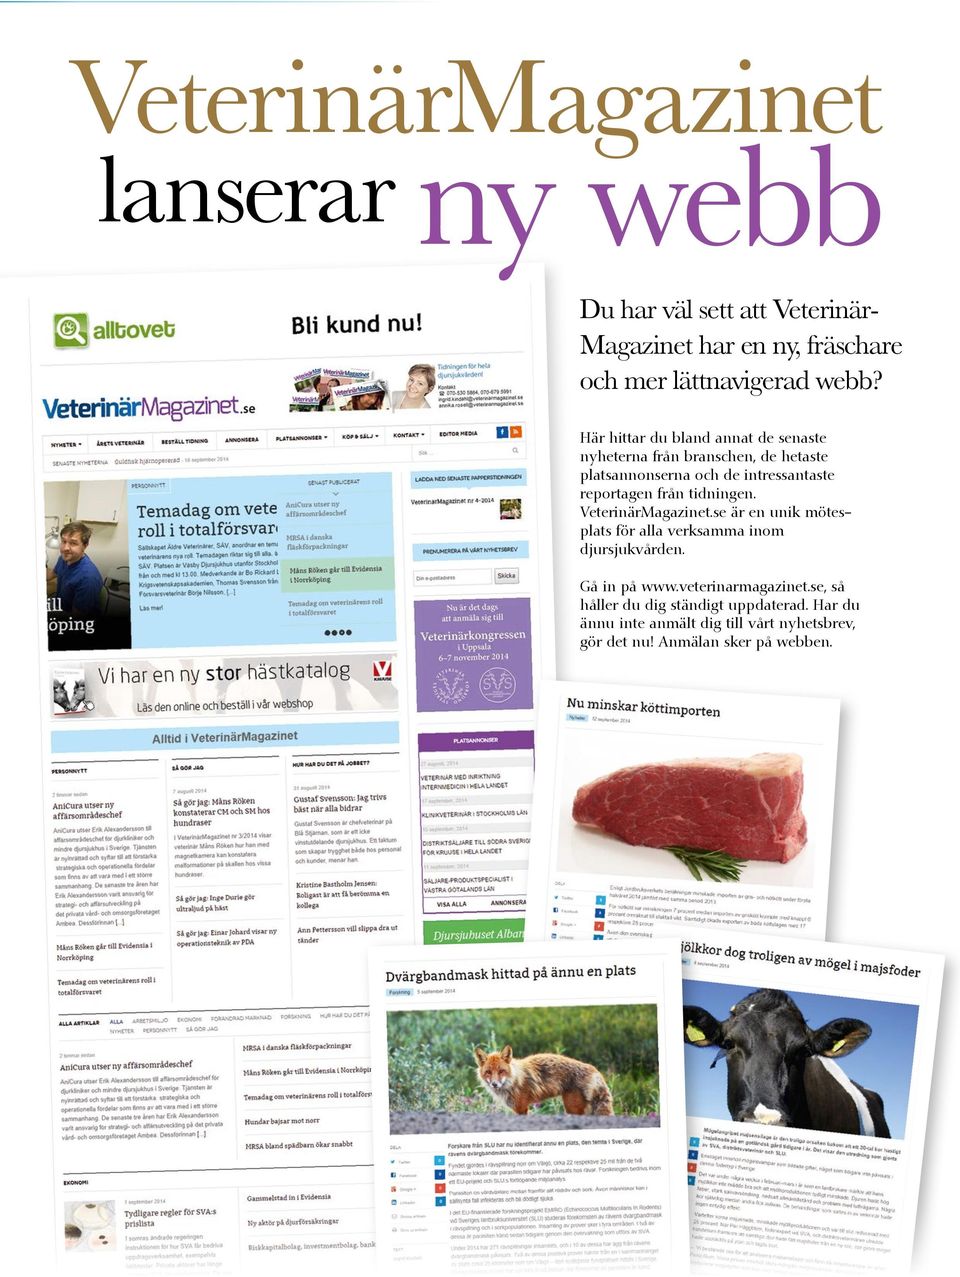 tidningen. VeterinärMagazinet.se är en unik mötesplats för alla verksamma inom djursjukvården. Gå in på www.veterinarmagazinet.